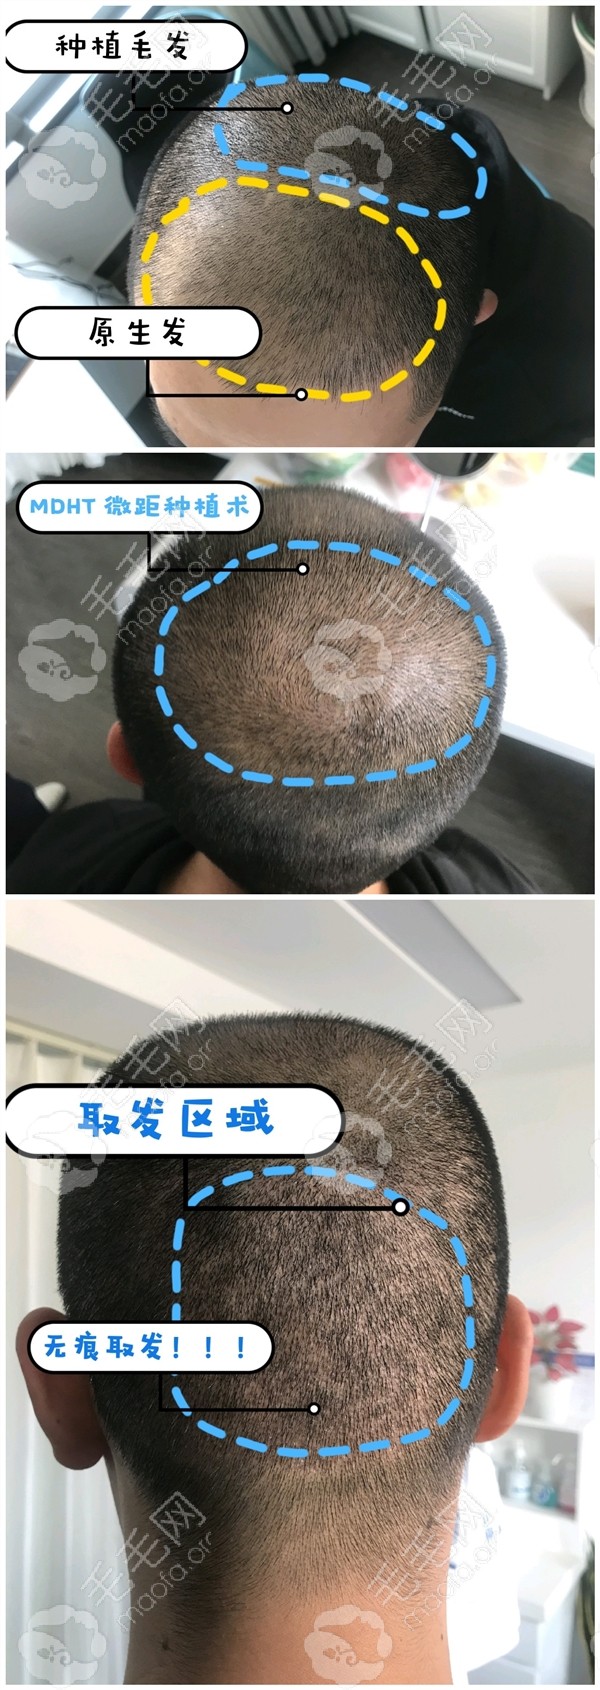 北京联合丰联丽格的男性头顶加密植发手术案例